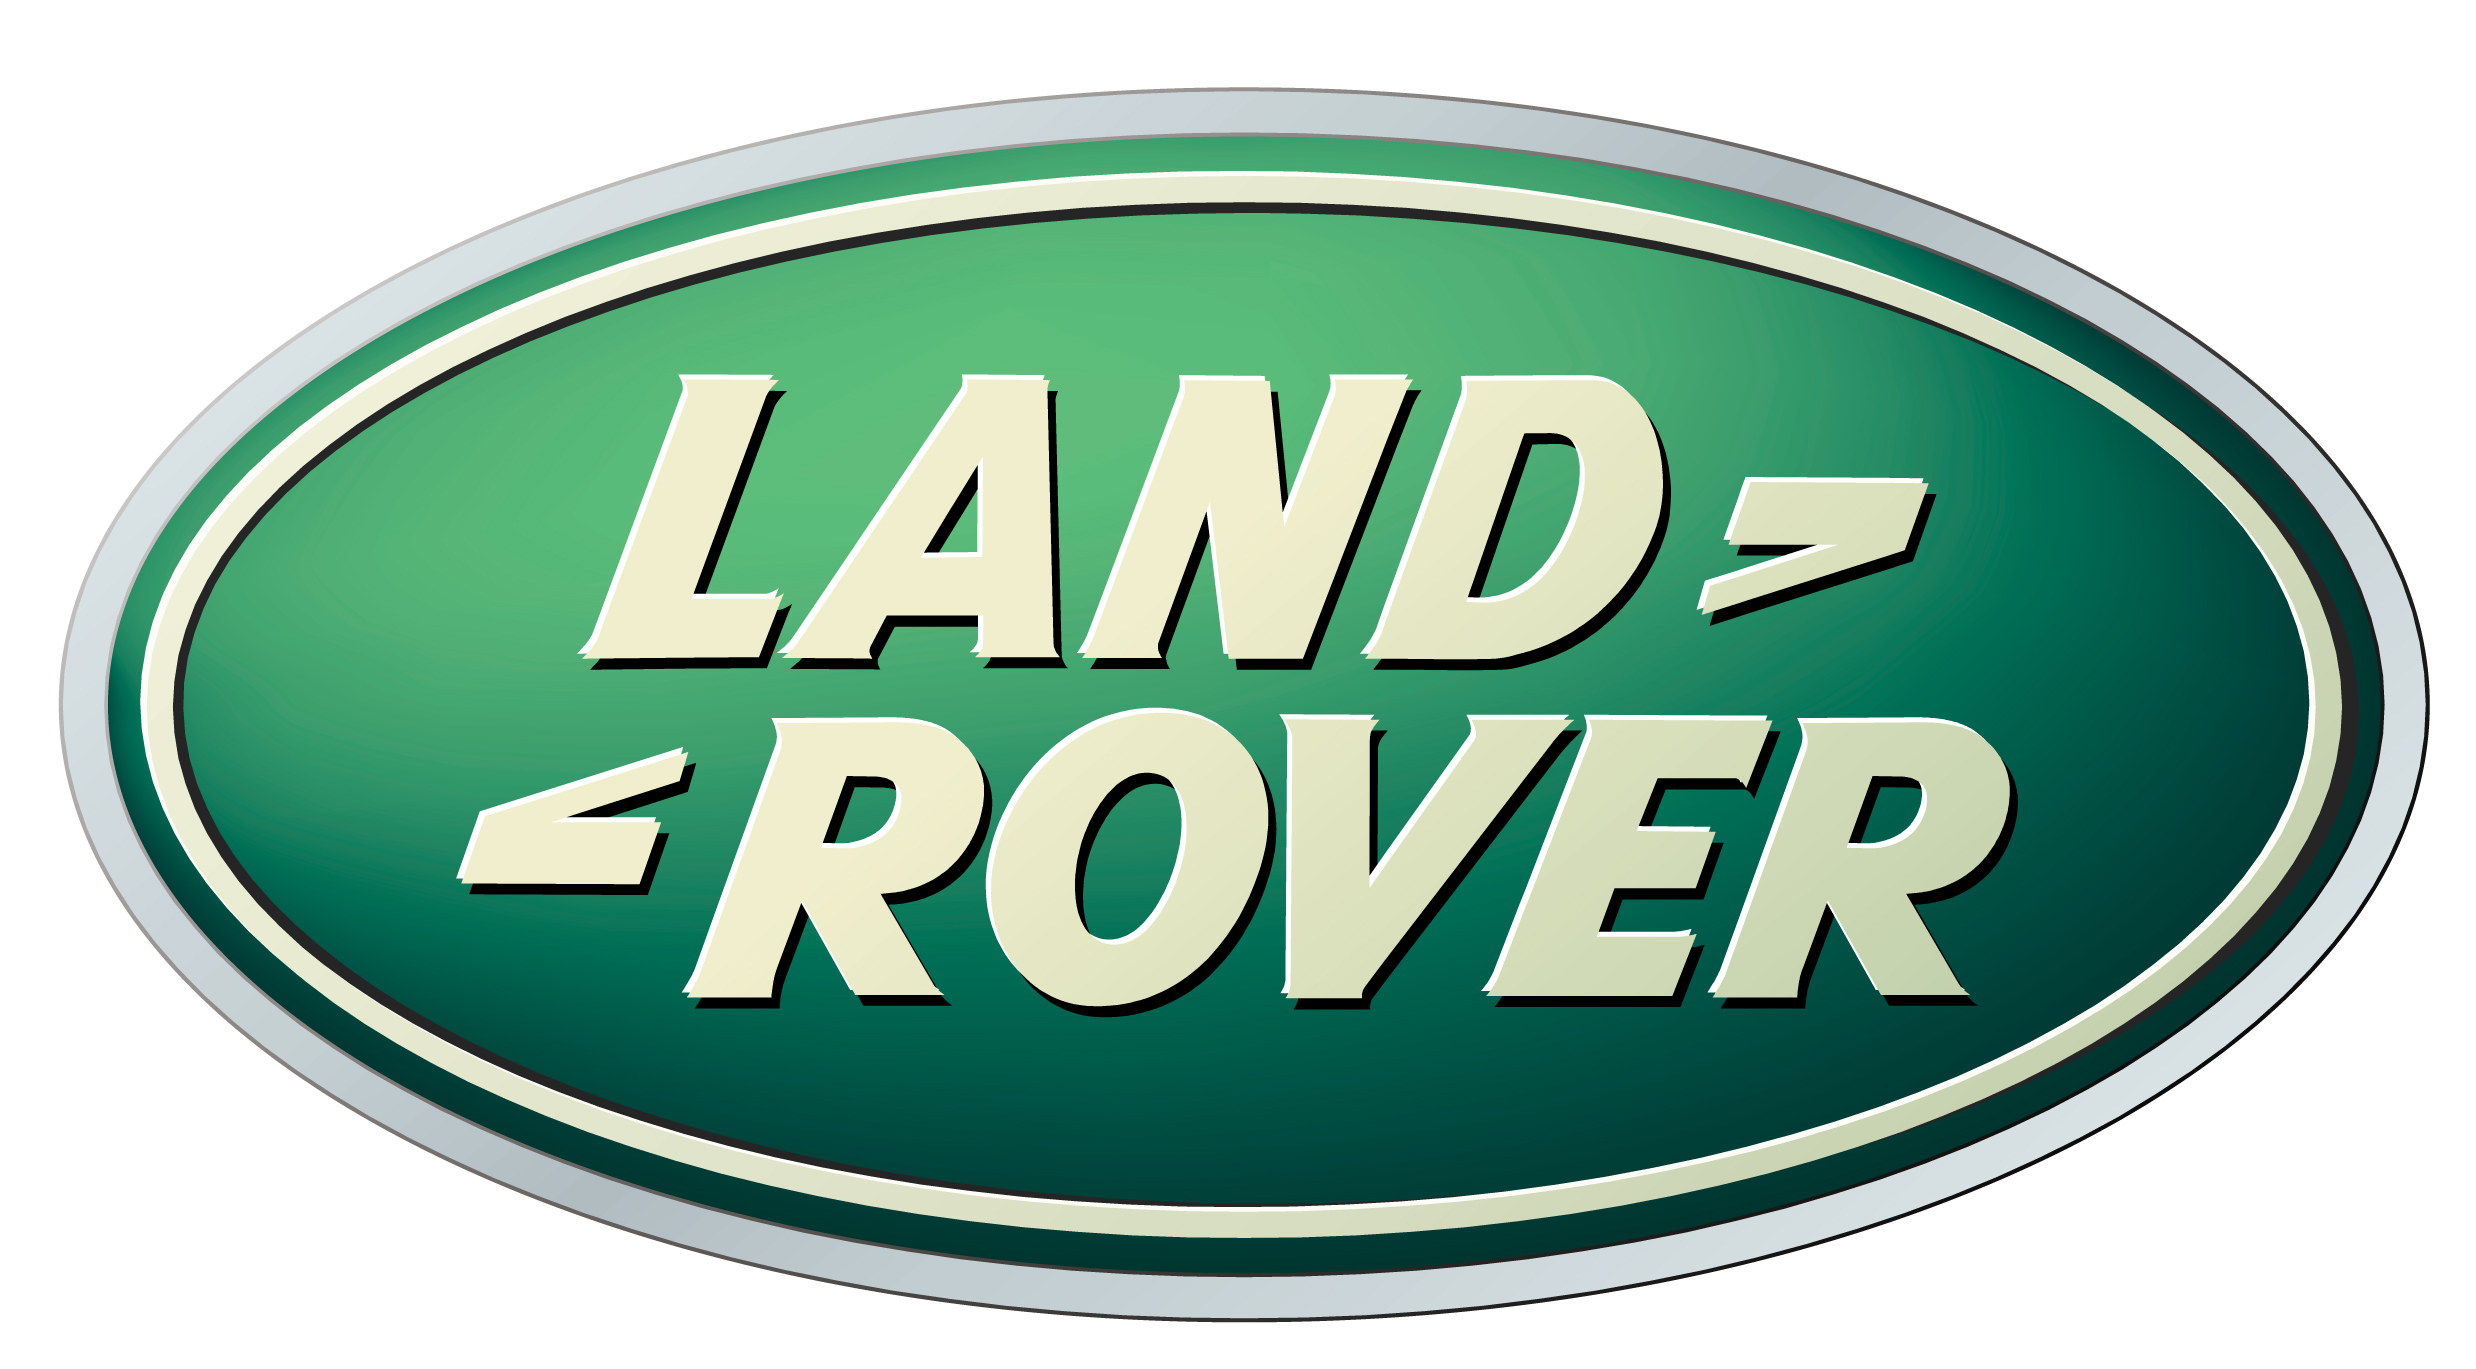 Lang Rover